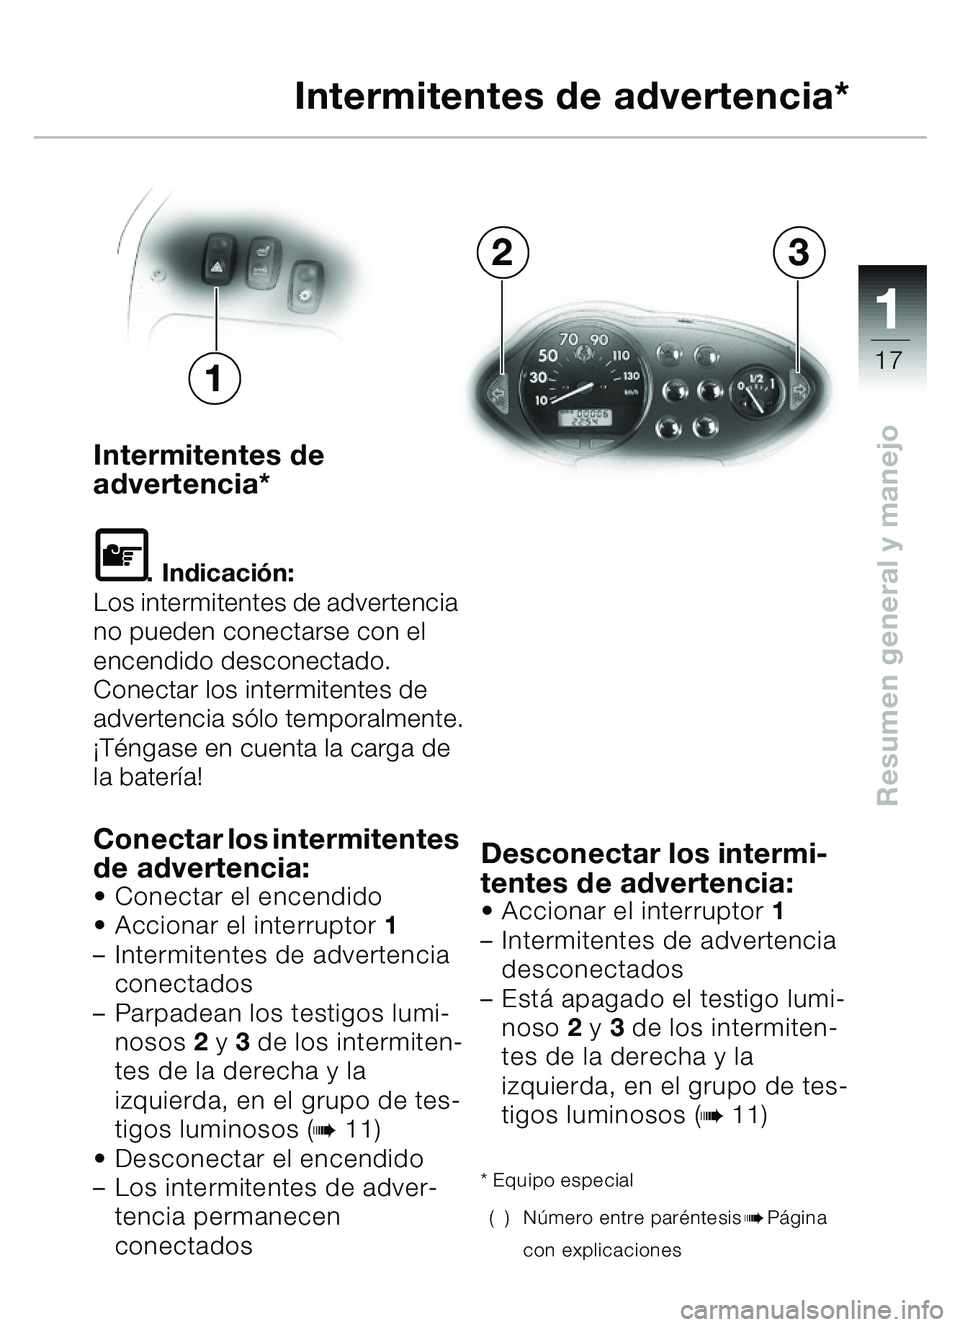 BMW MOTORRAD C1 2000  Manual de instrucciones (in Spanish) 111
17
Resumen general y manejo
Intermitentes de
advertencia*
\f. Indicación:
Los intermitentes de advertencia 
no pueden conectarse con el 
encendido desconectado. 
Conectar los intermitentes de 
ad